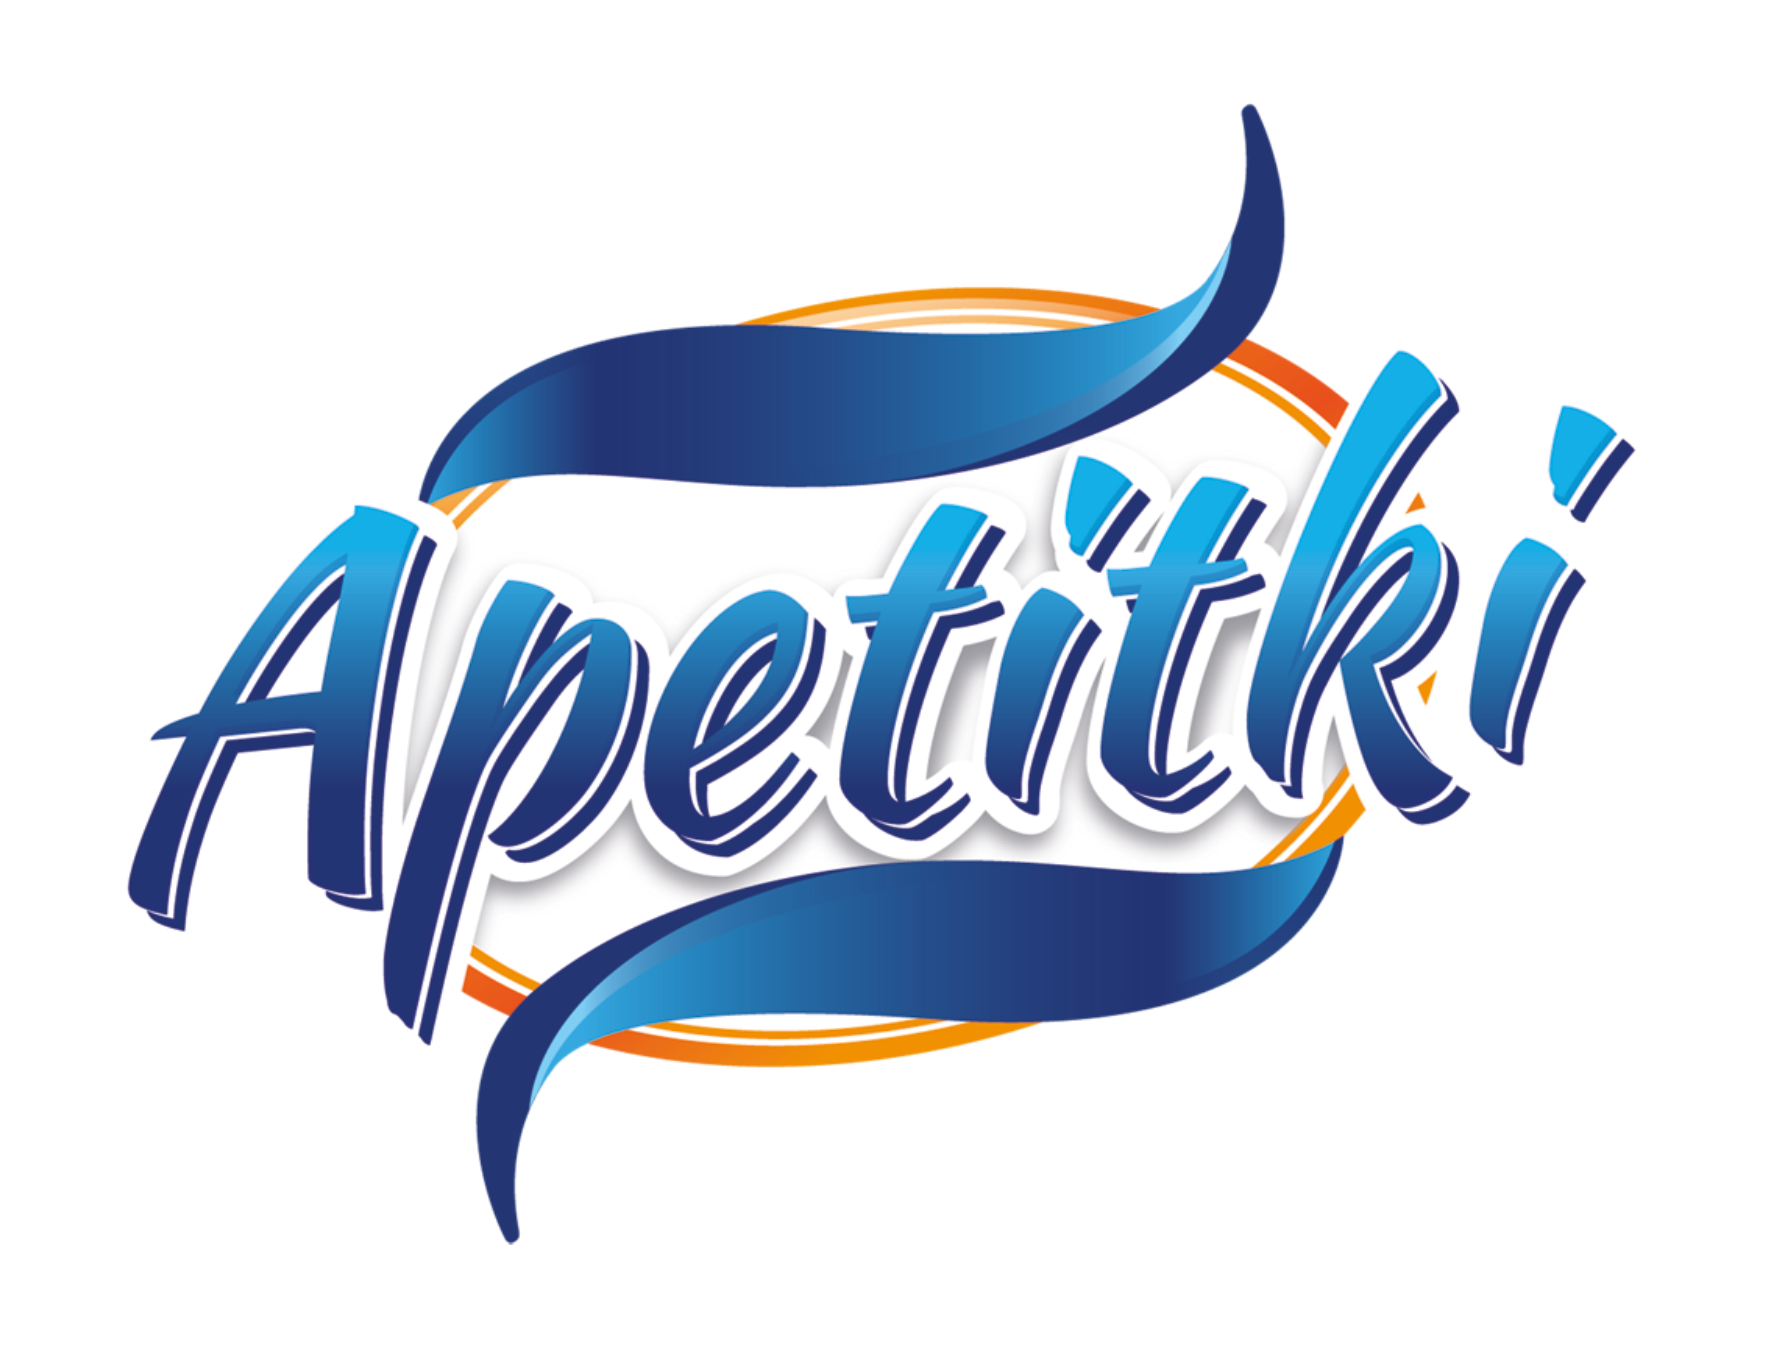 Apetitki Logo Png